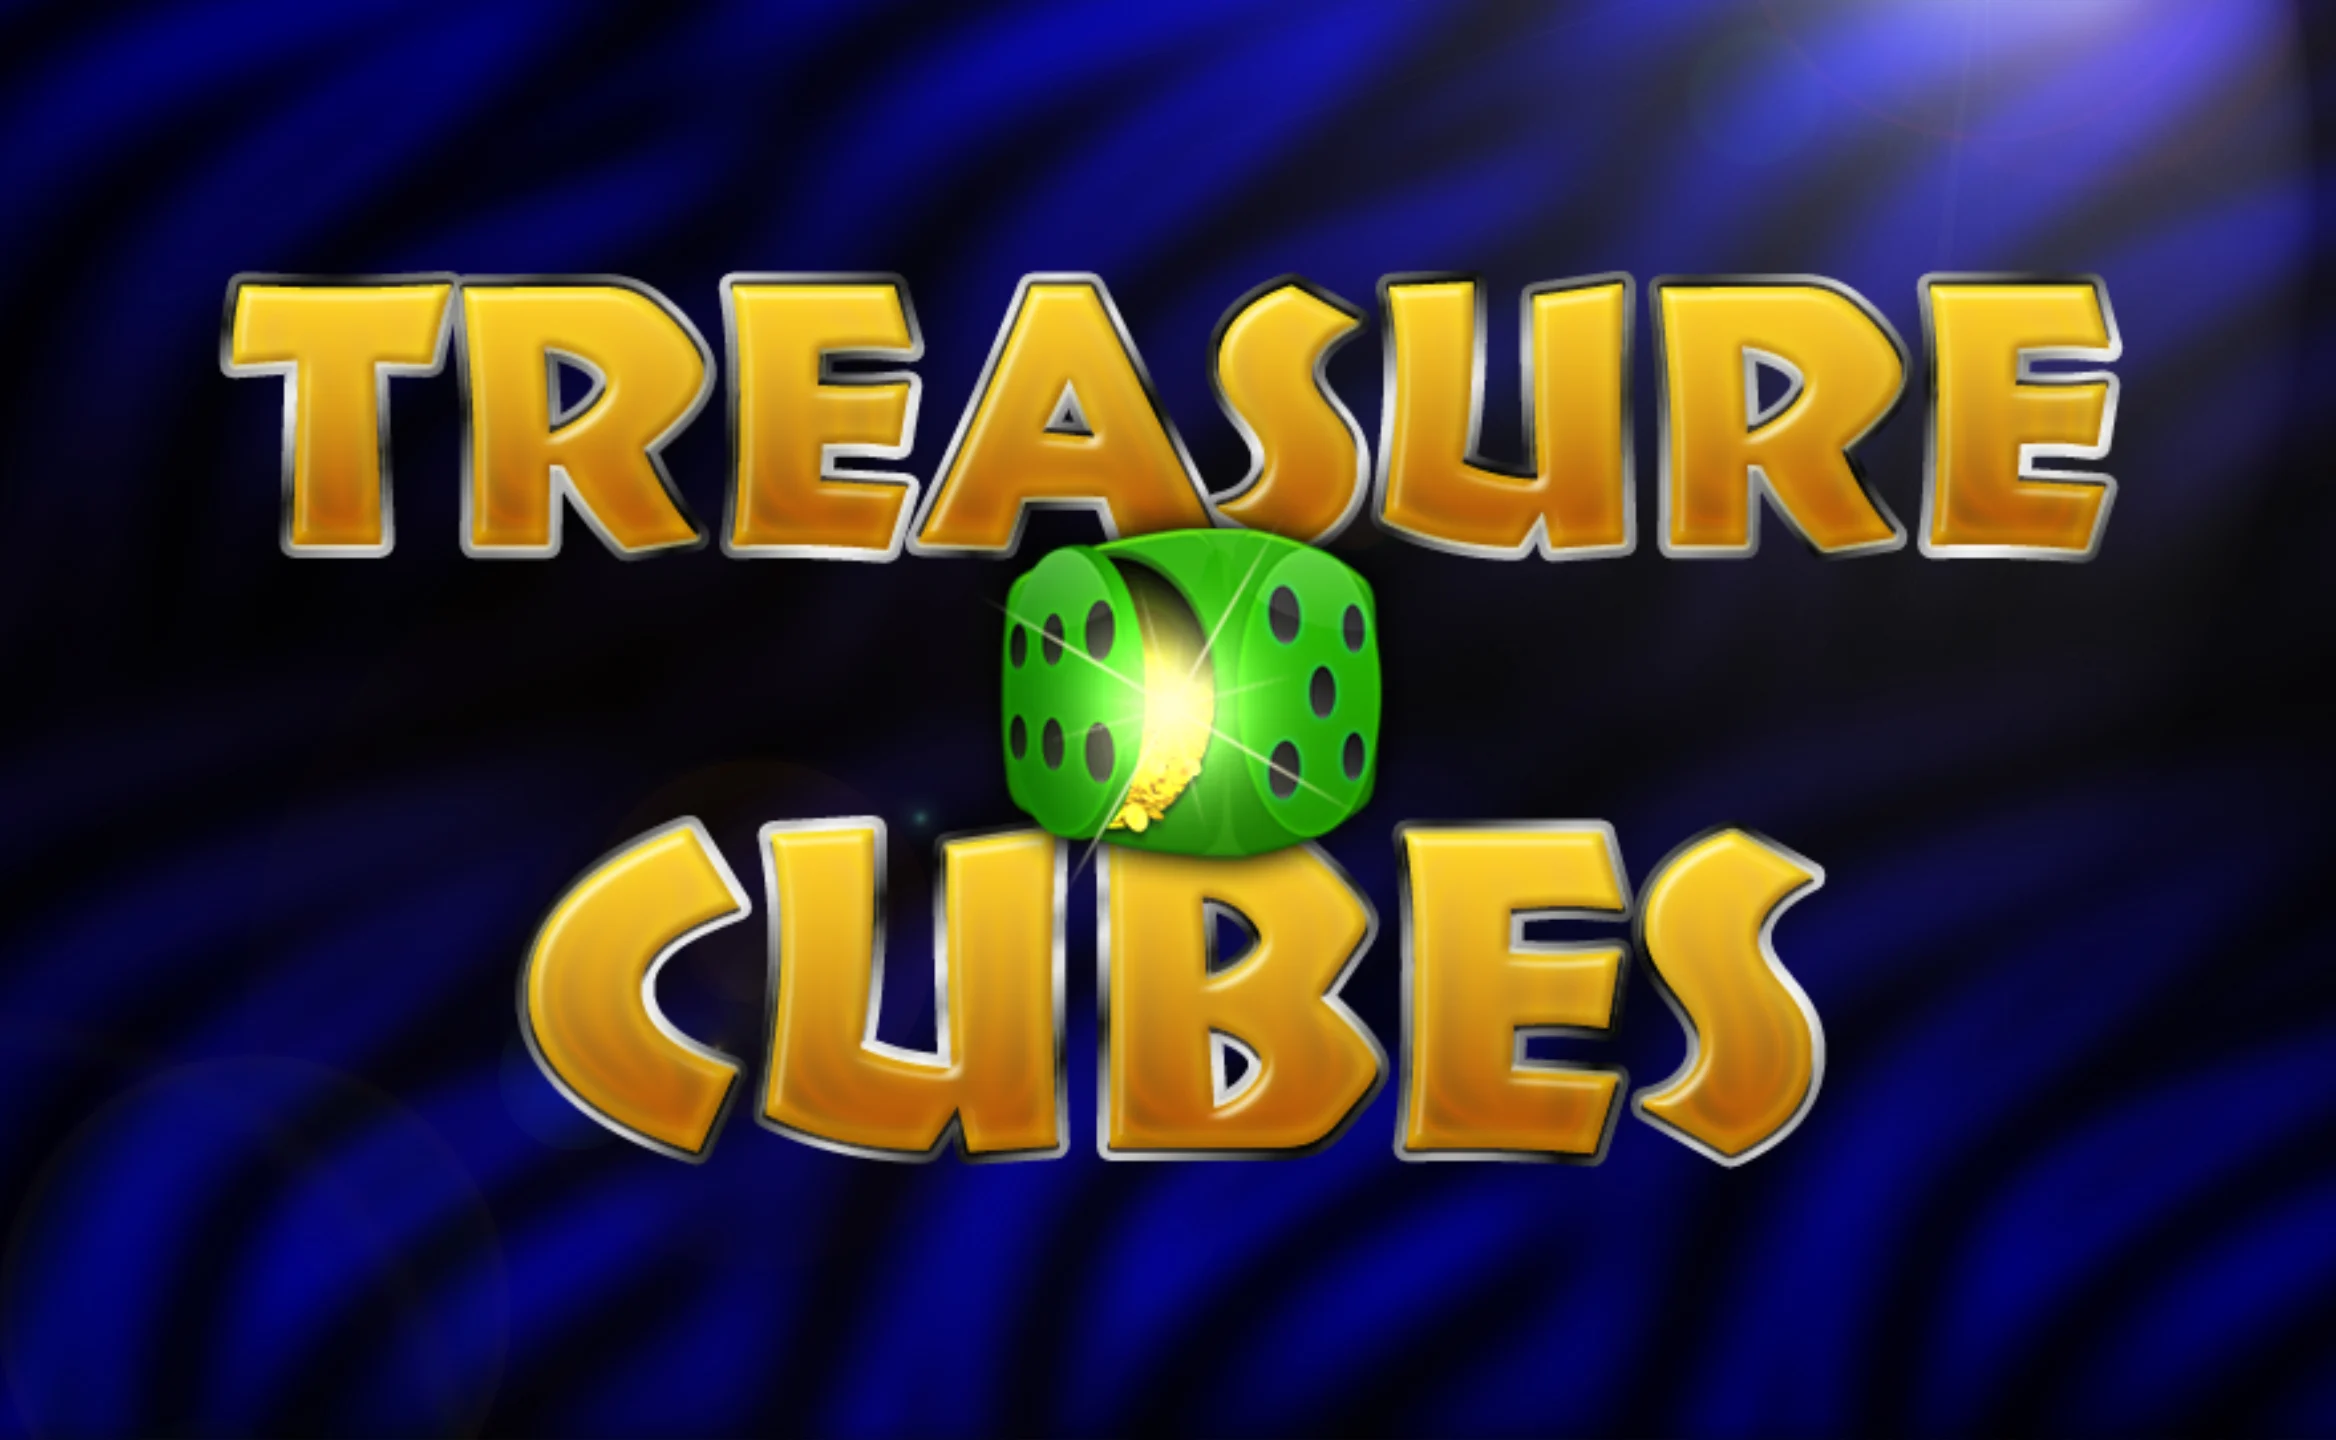 Gioca a Treasure Cubes sul casino online Starcasino.be